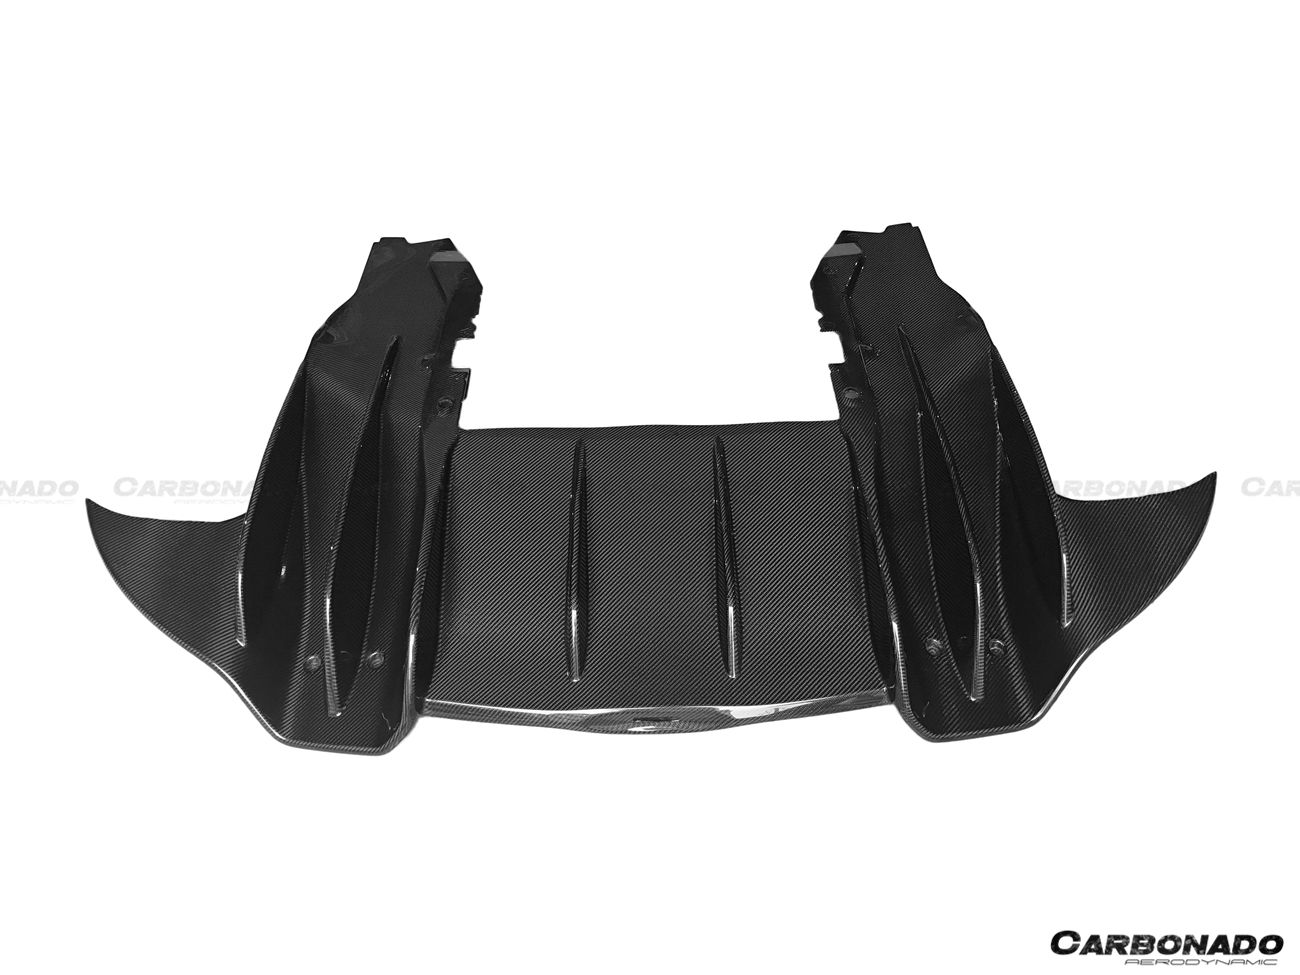 2015-2020 McLaren 540c/570s/570gt OEM Style Carbon Fiber Rear Diffuser - Carbonado Aero